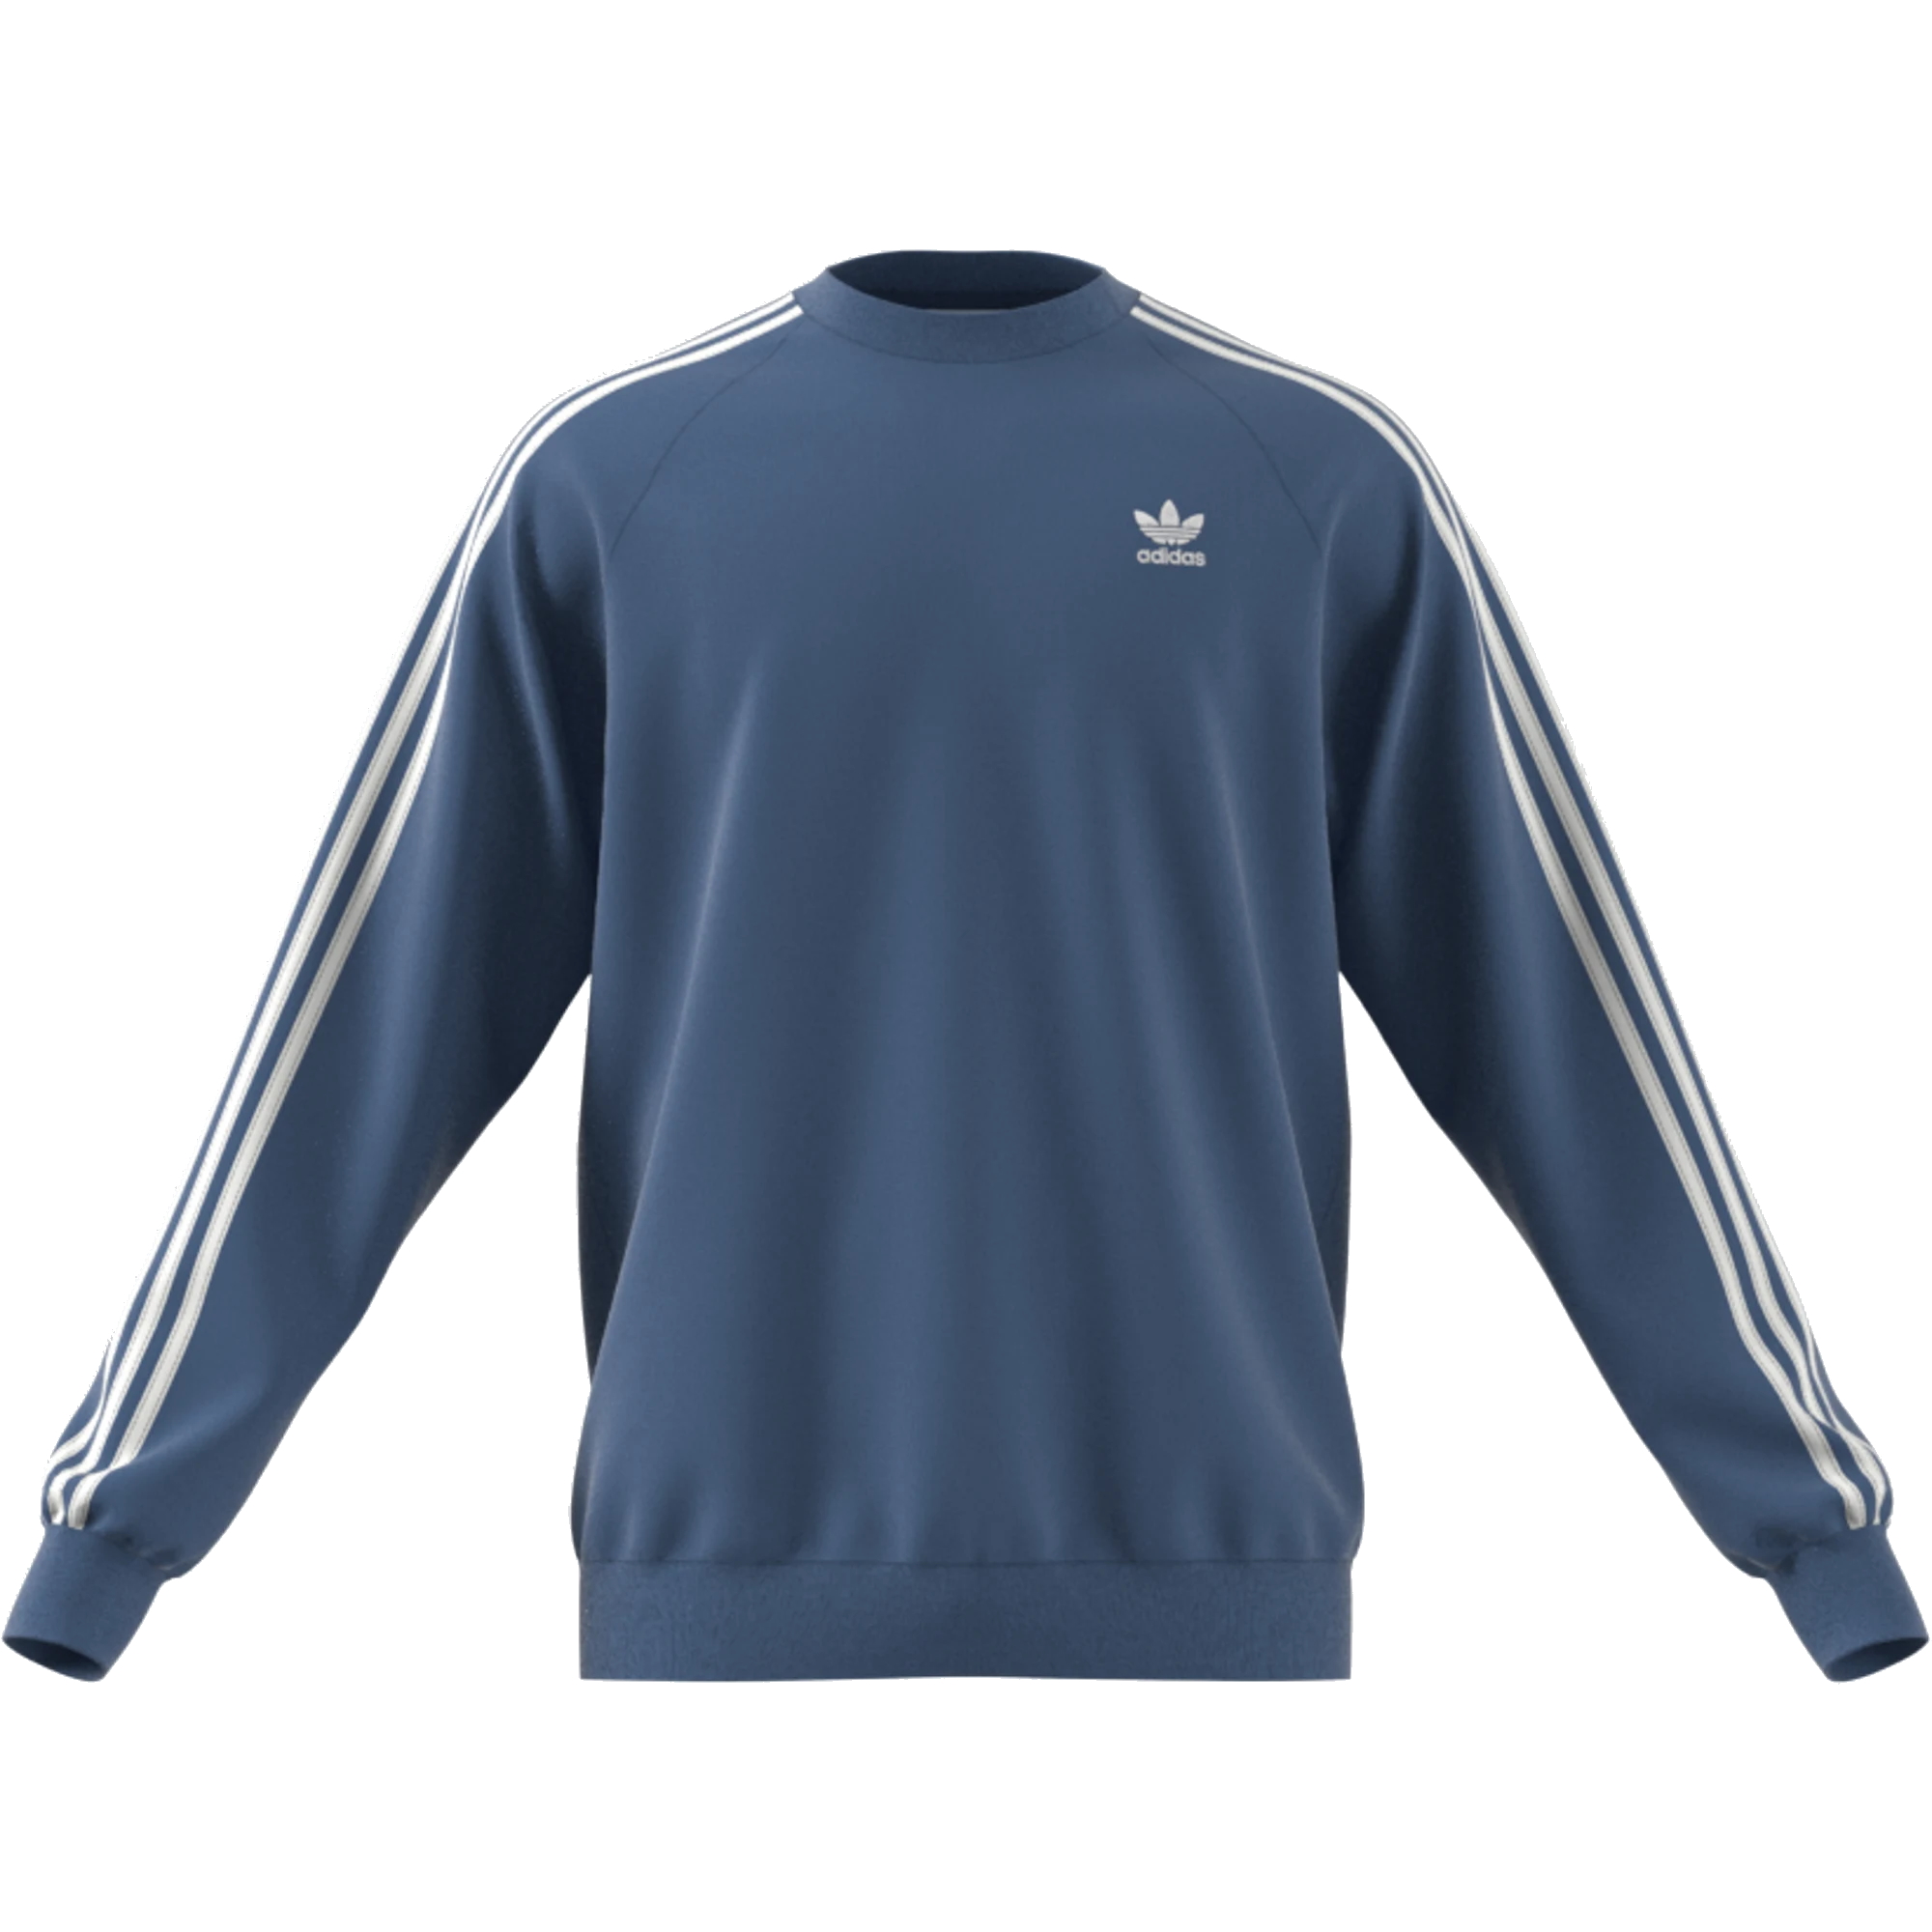 ☆ Adidas 3 Stripes Crew Sweatshirt Pullover blau - hier bestellen!